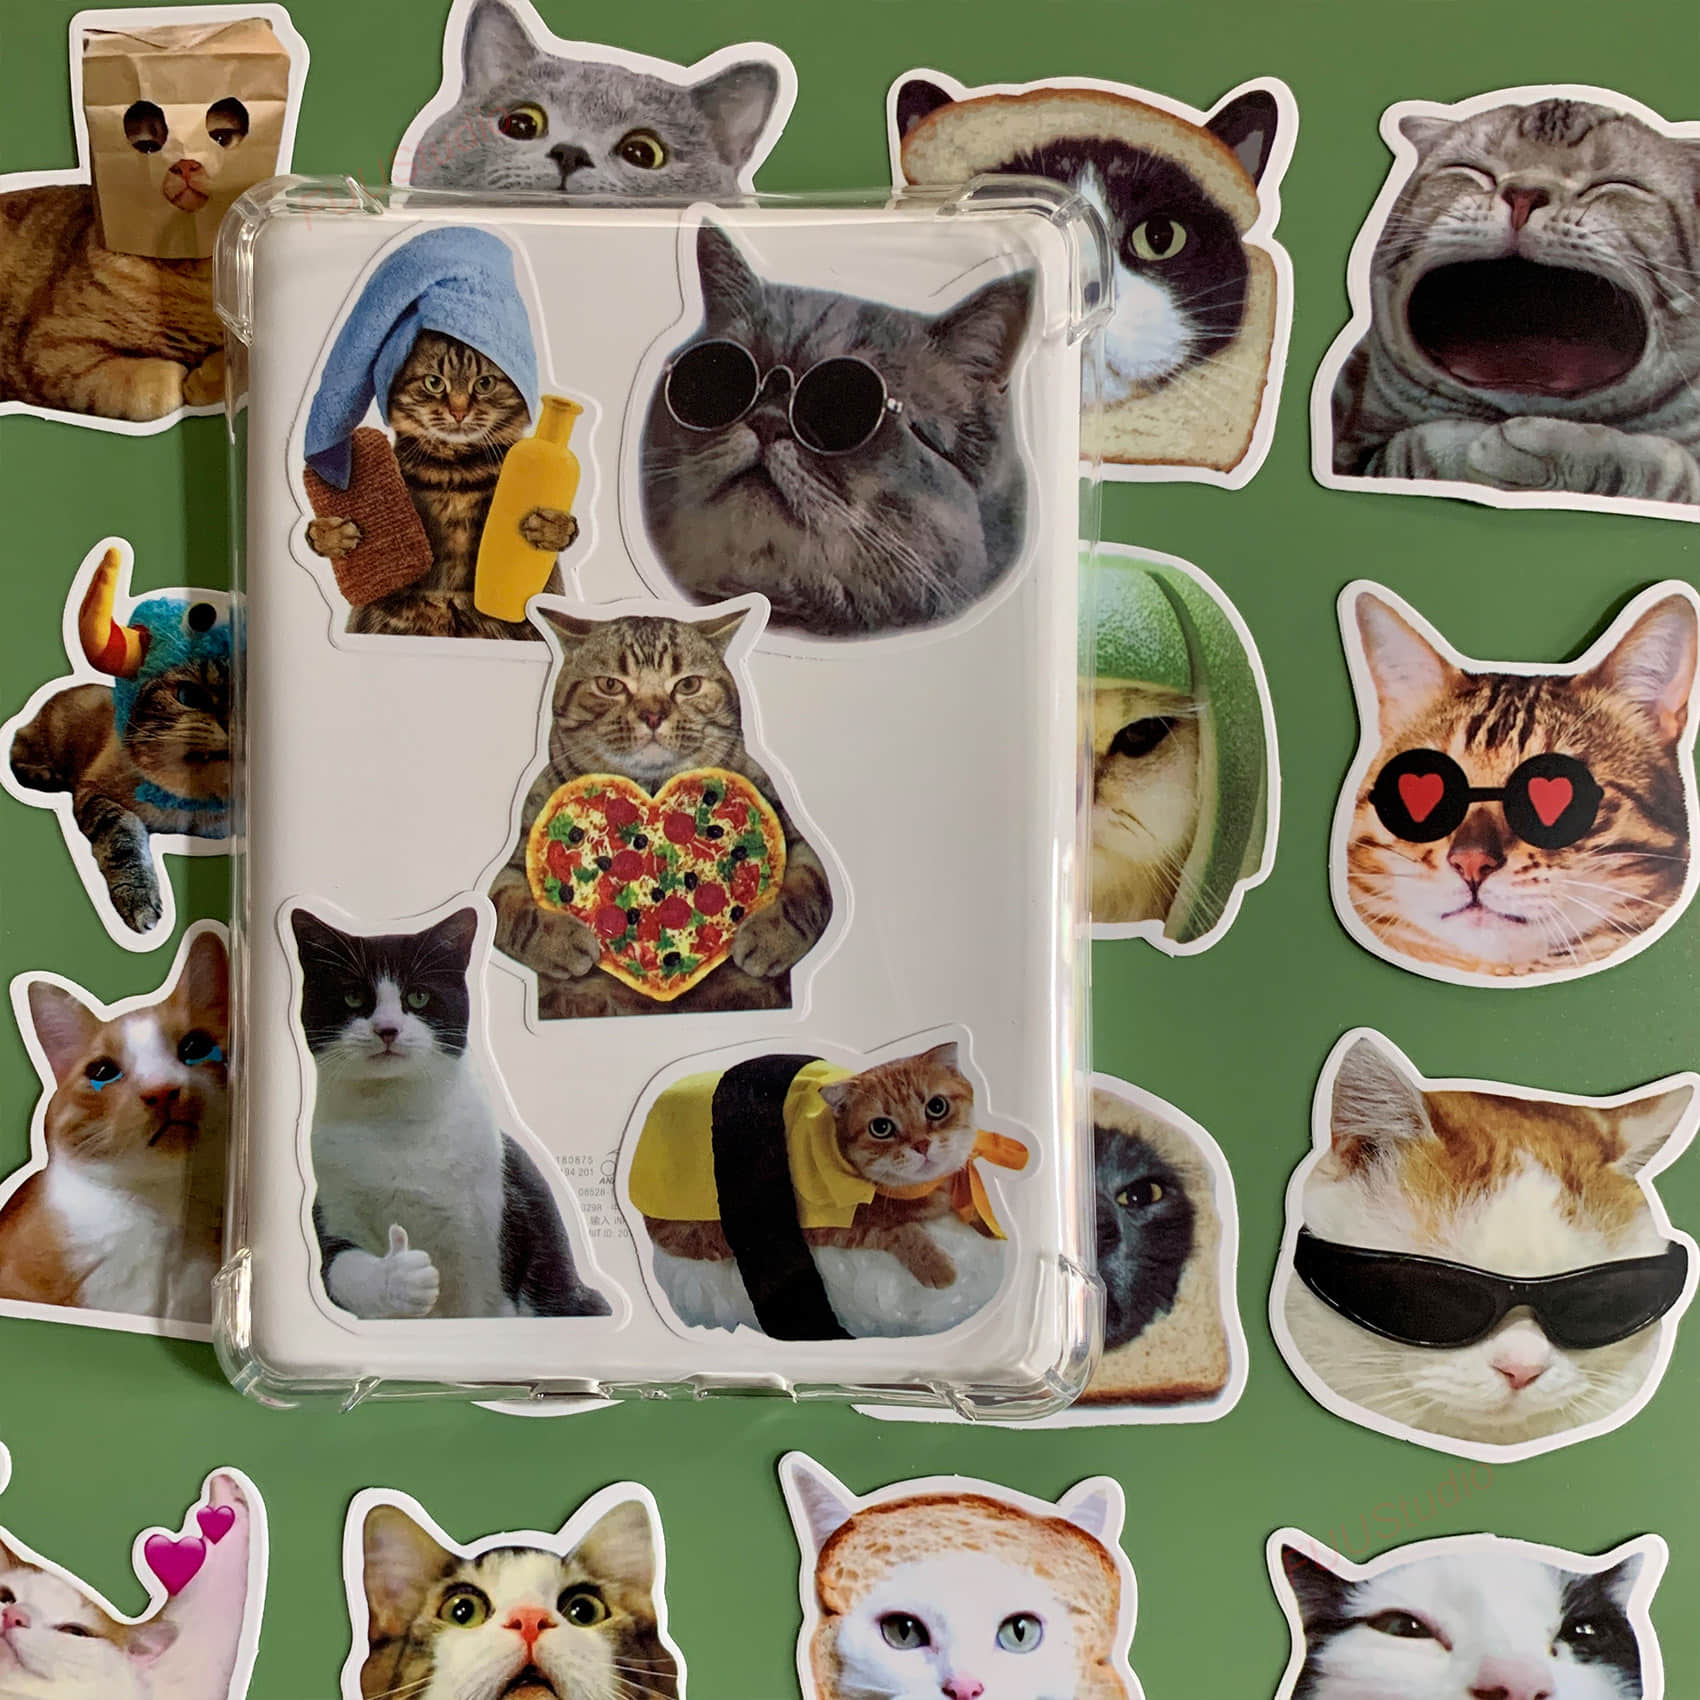 Cat emoji Sticker Pack 50 pieces-FUU Studio